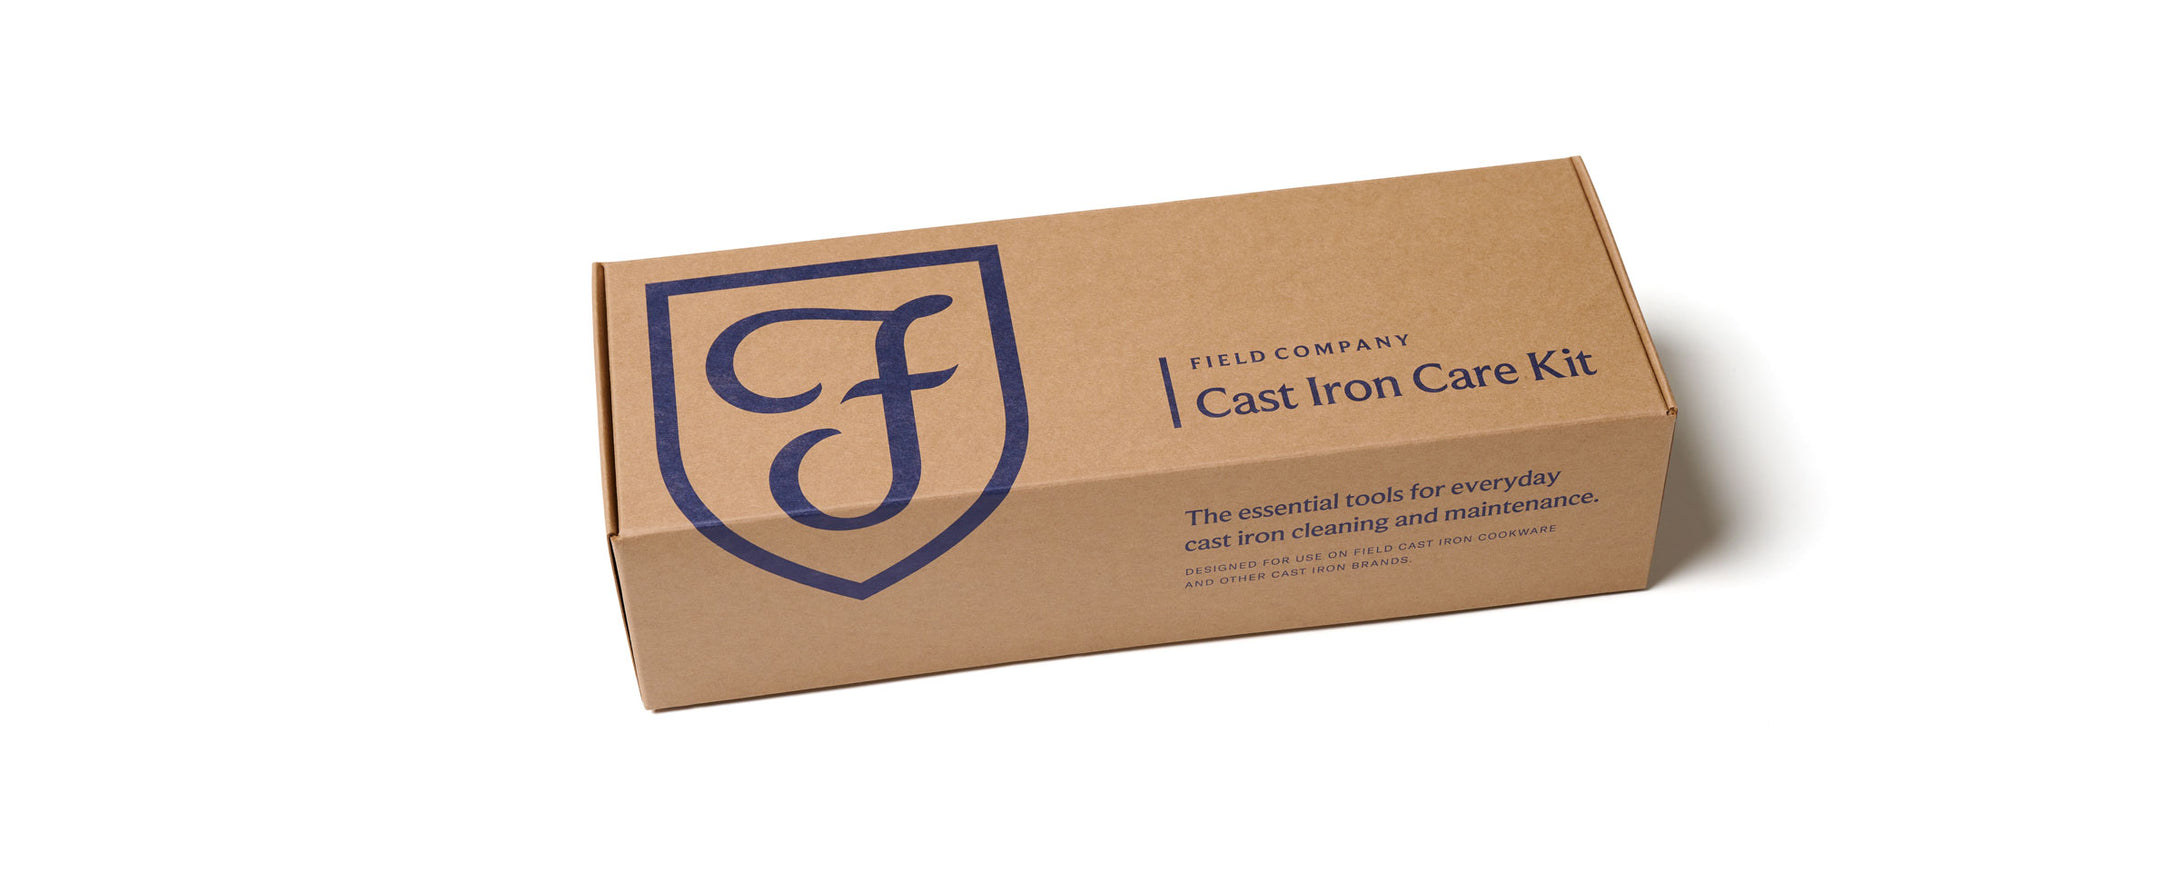 Cast Iron Care Kit box